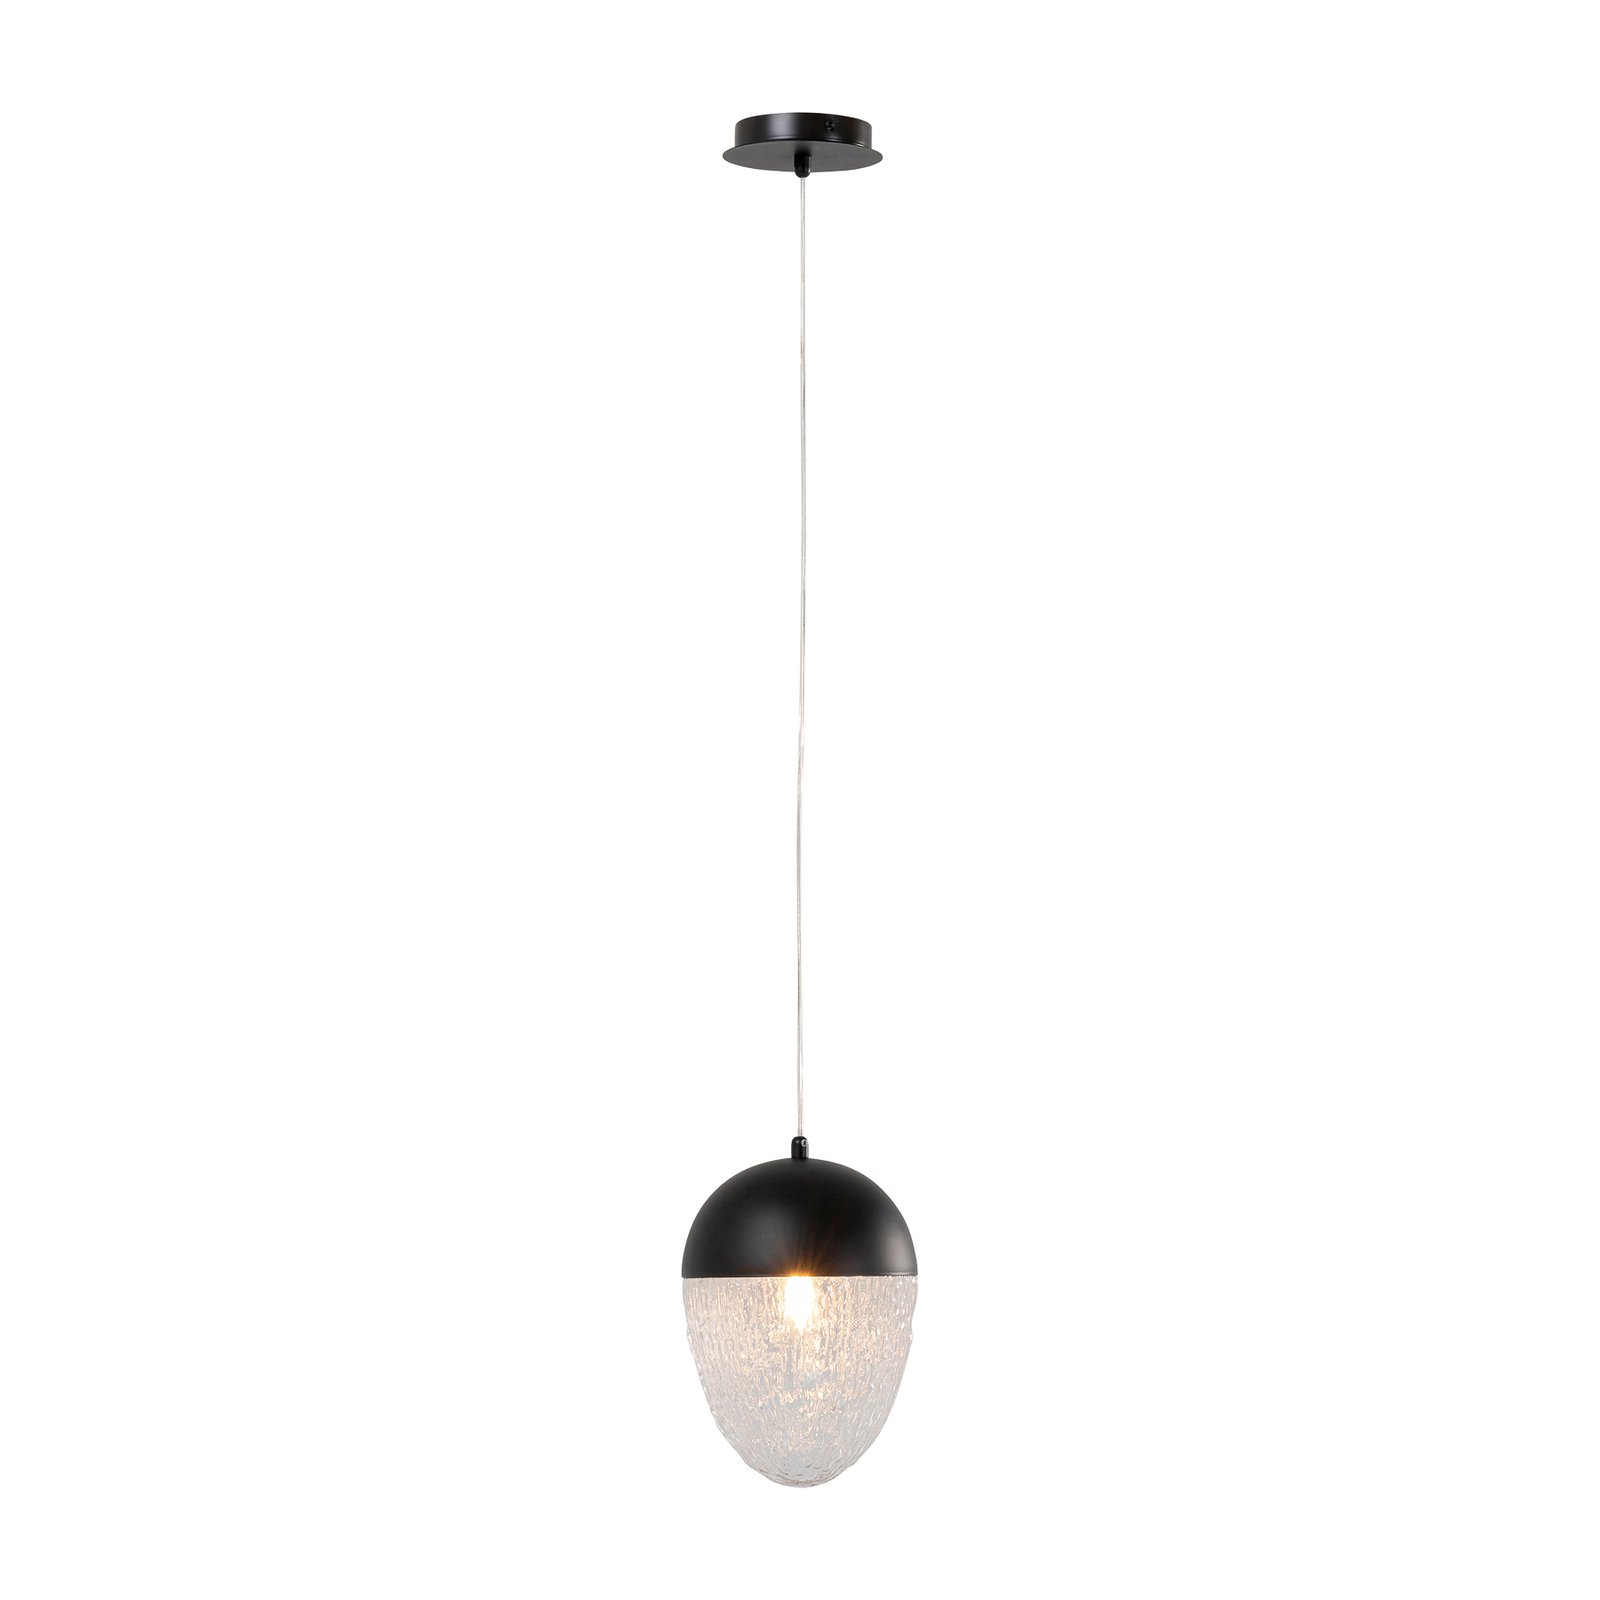 KARE Frozen hanglamp 1-lamp zwart Ø 20cm